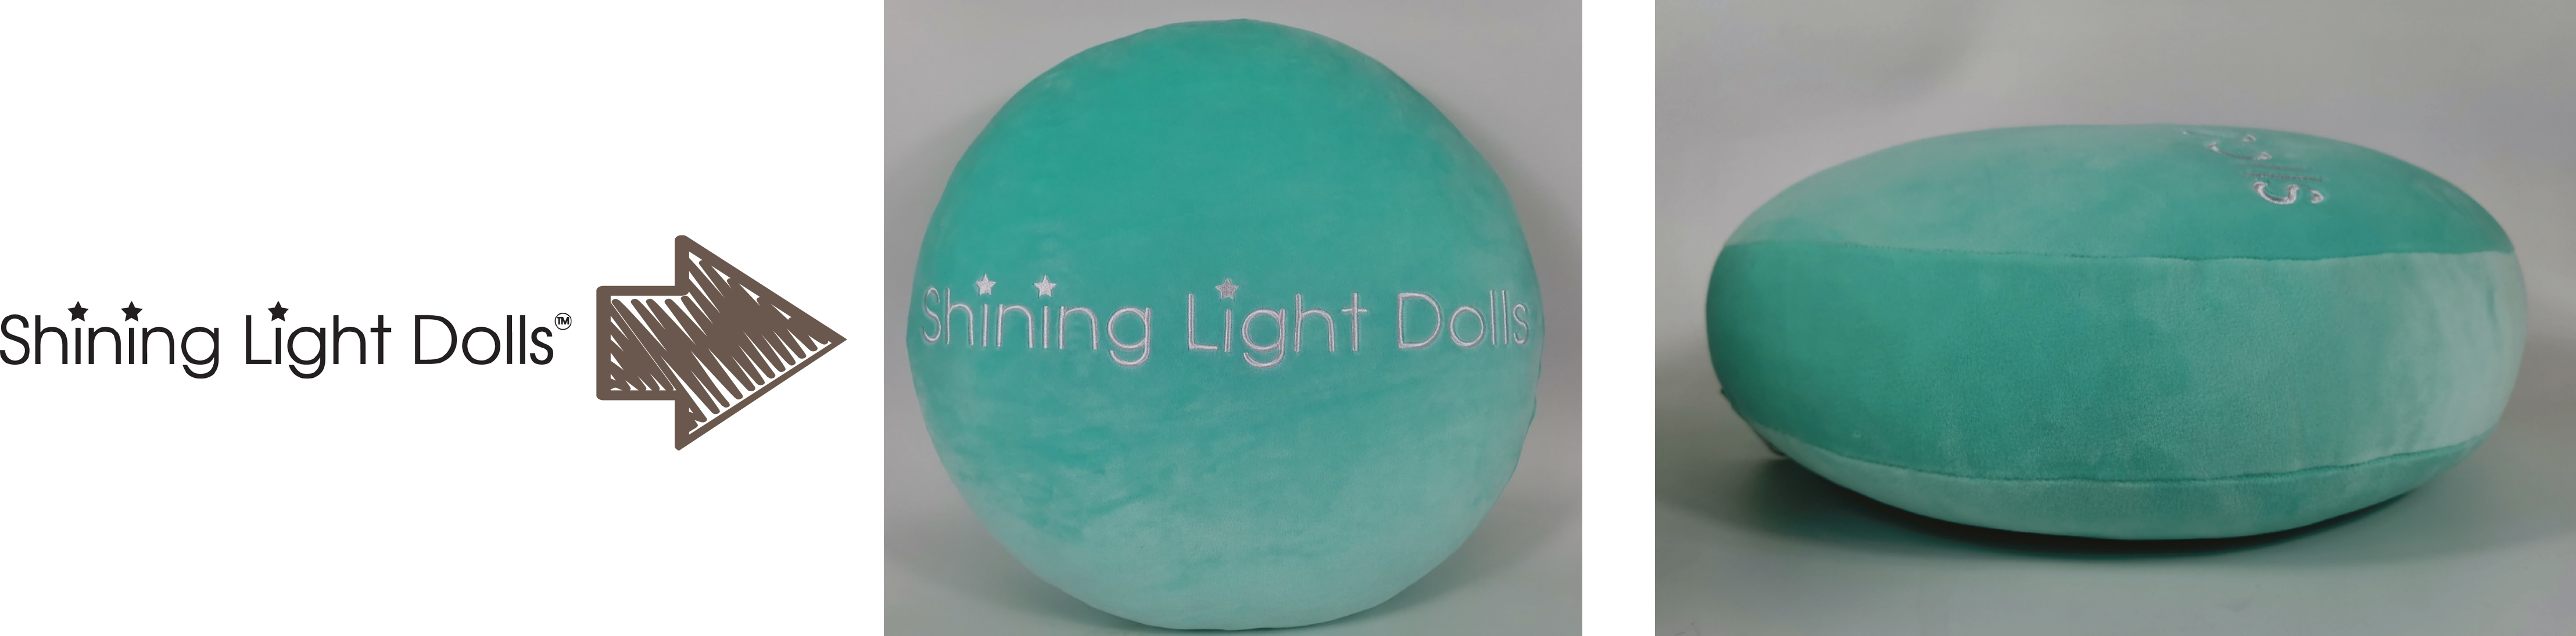 Shining Light Dolls logo pillow